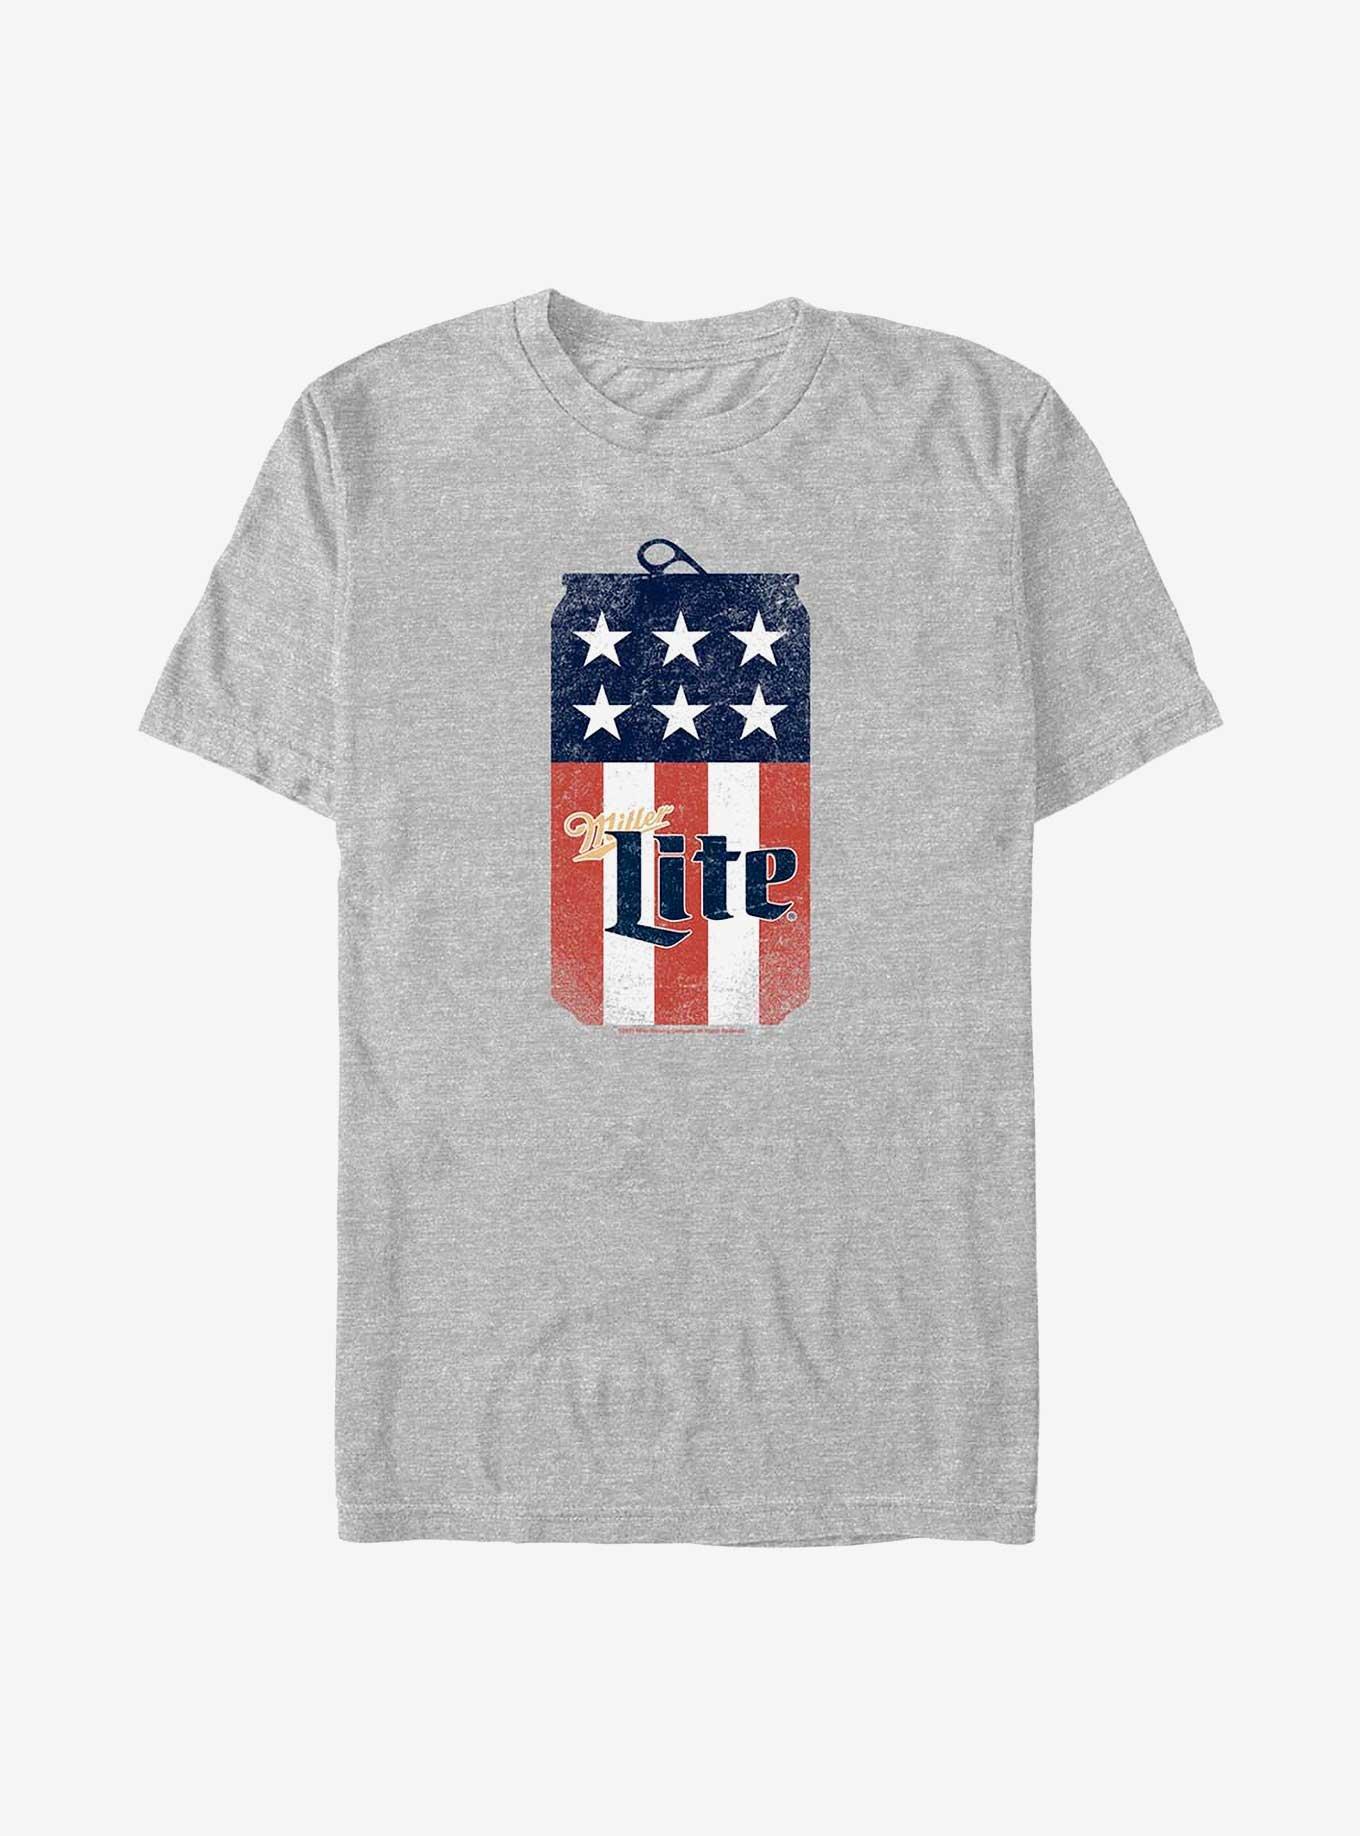 Coors Miller Lite USA Flag Can T-Shirt